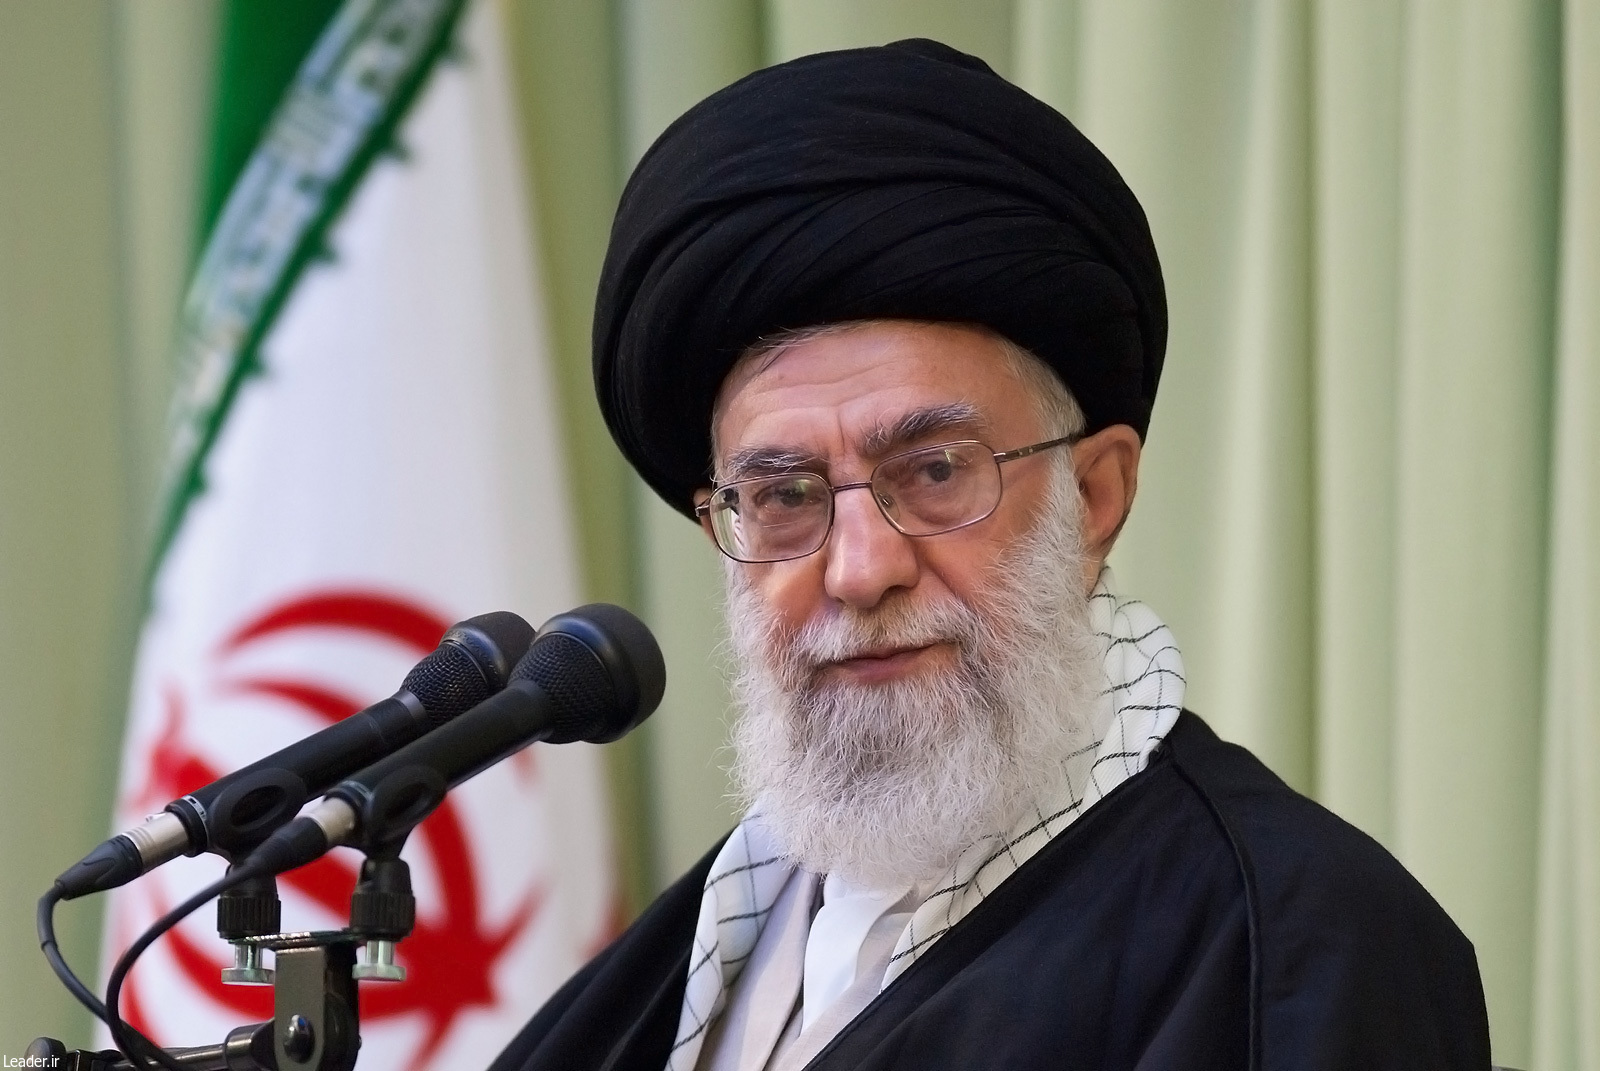 الإمام الخامنئي سيرعى ملتقى لقوات التبعئة في طهران